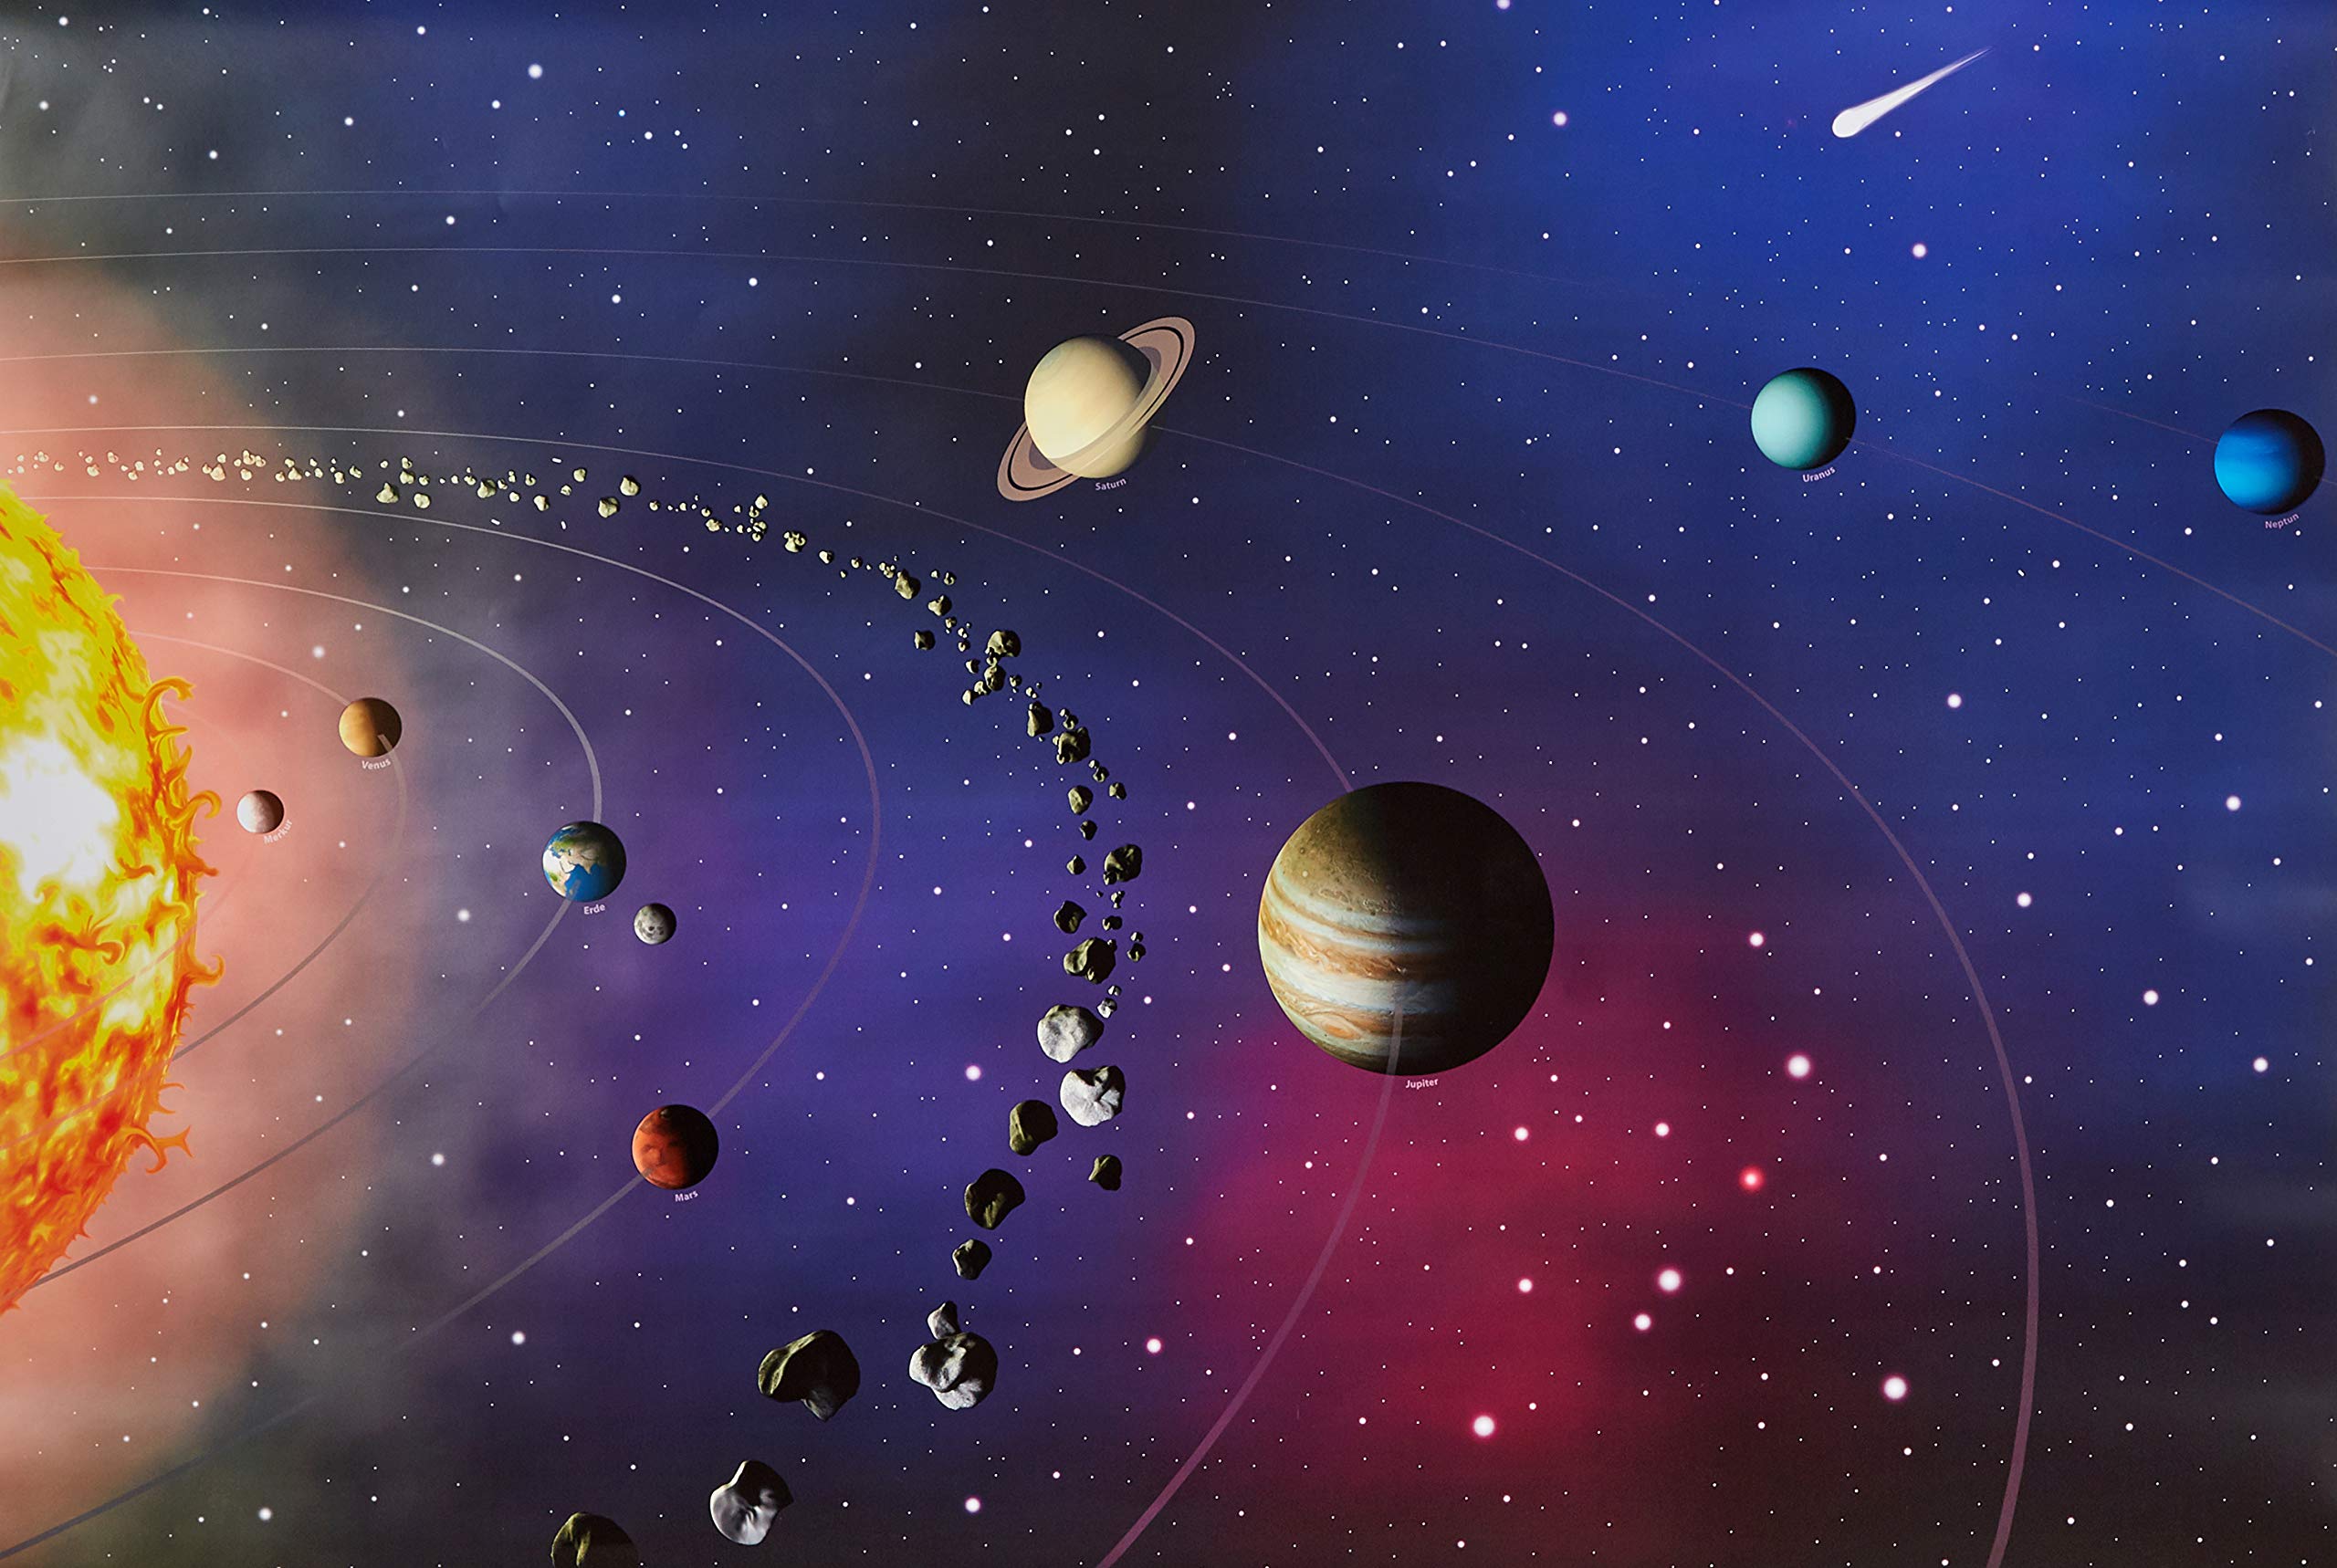 Faszination Sonnensystem - Neues 3D Poster mit Wissensflyer